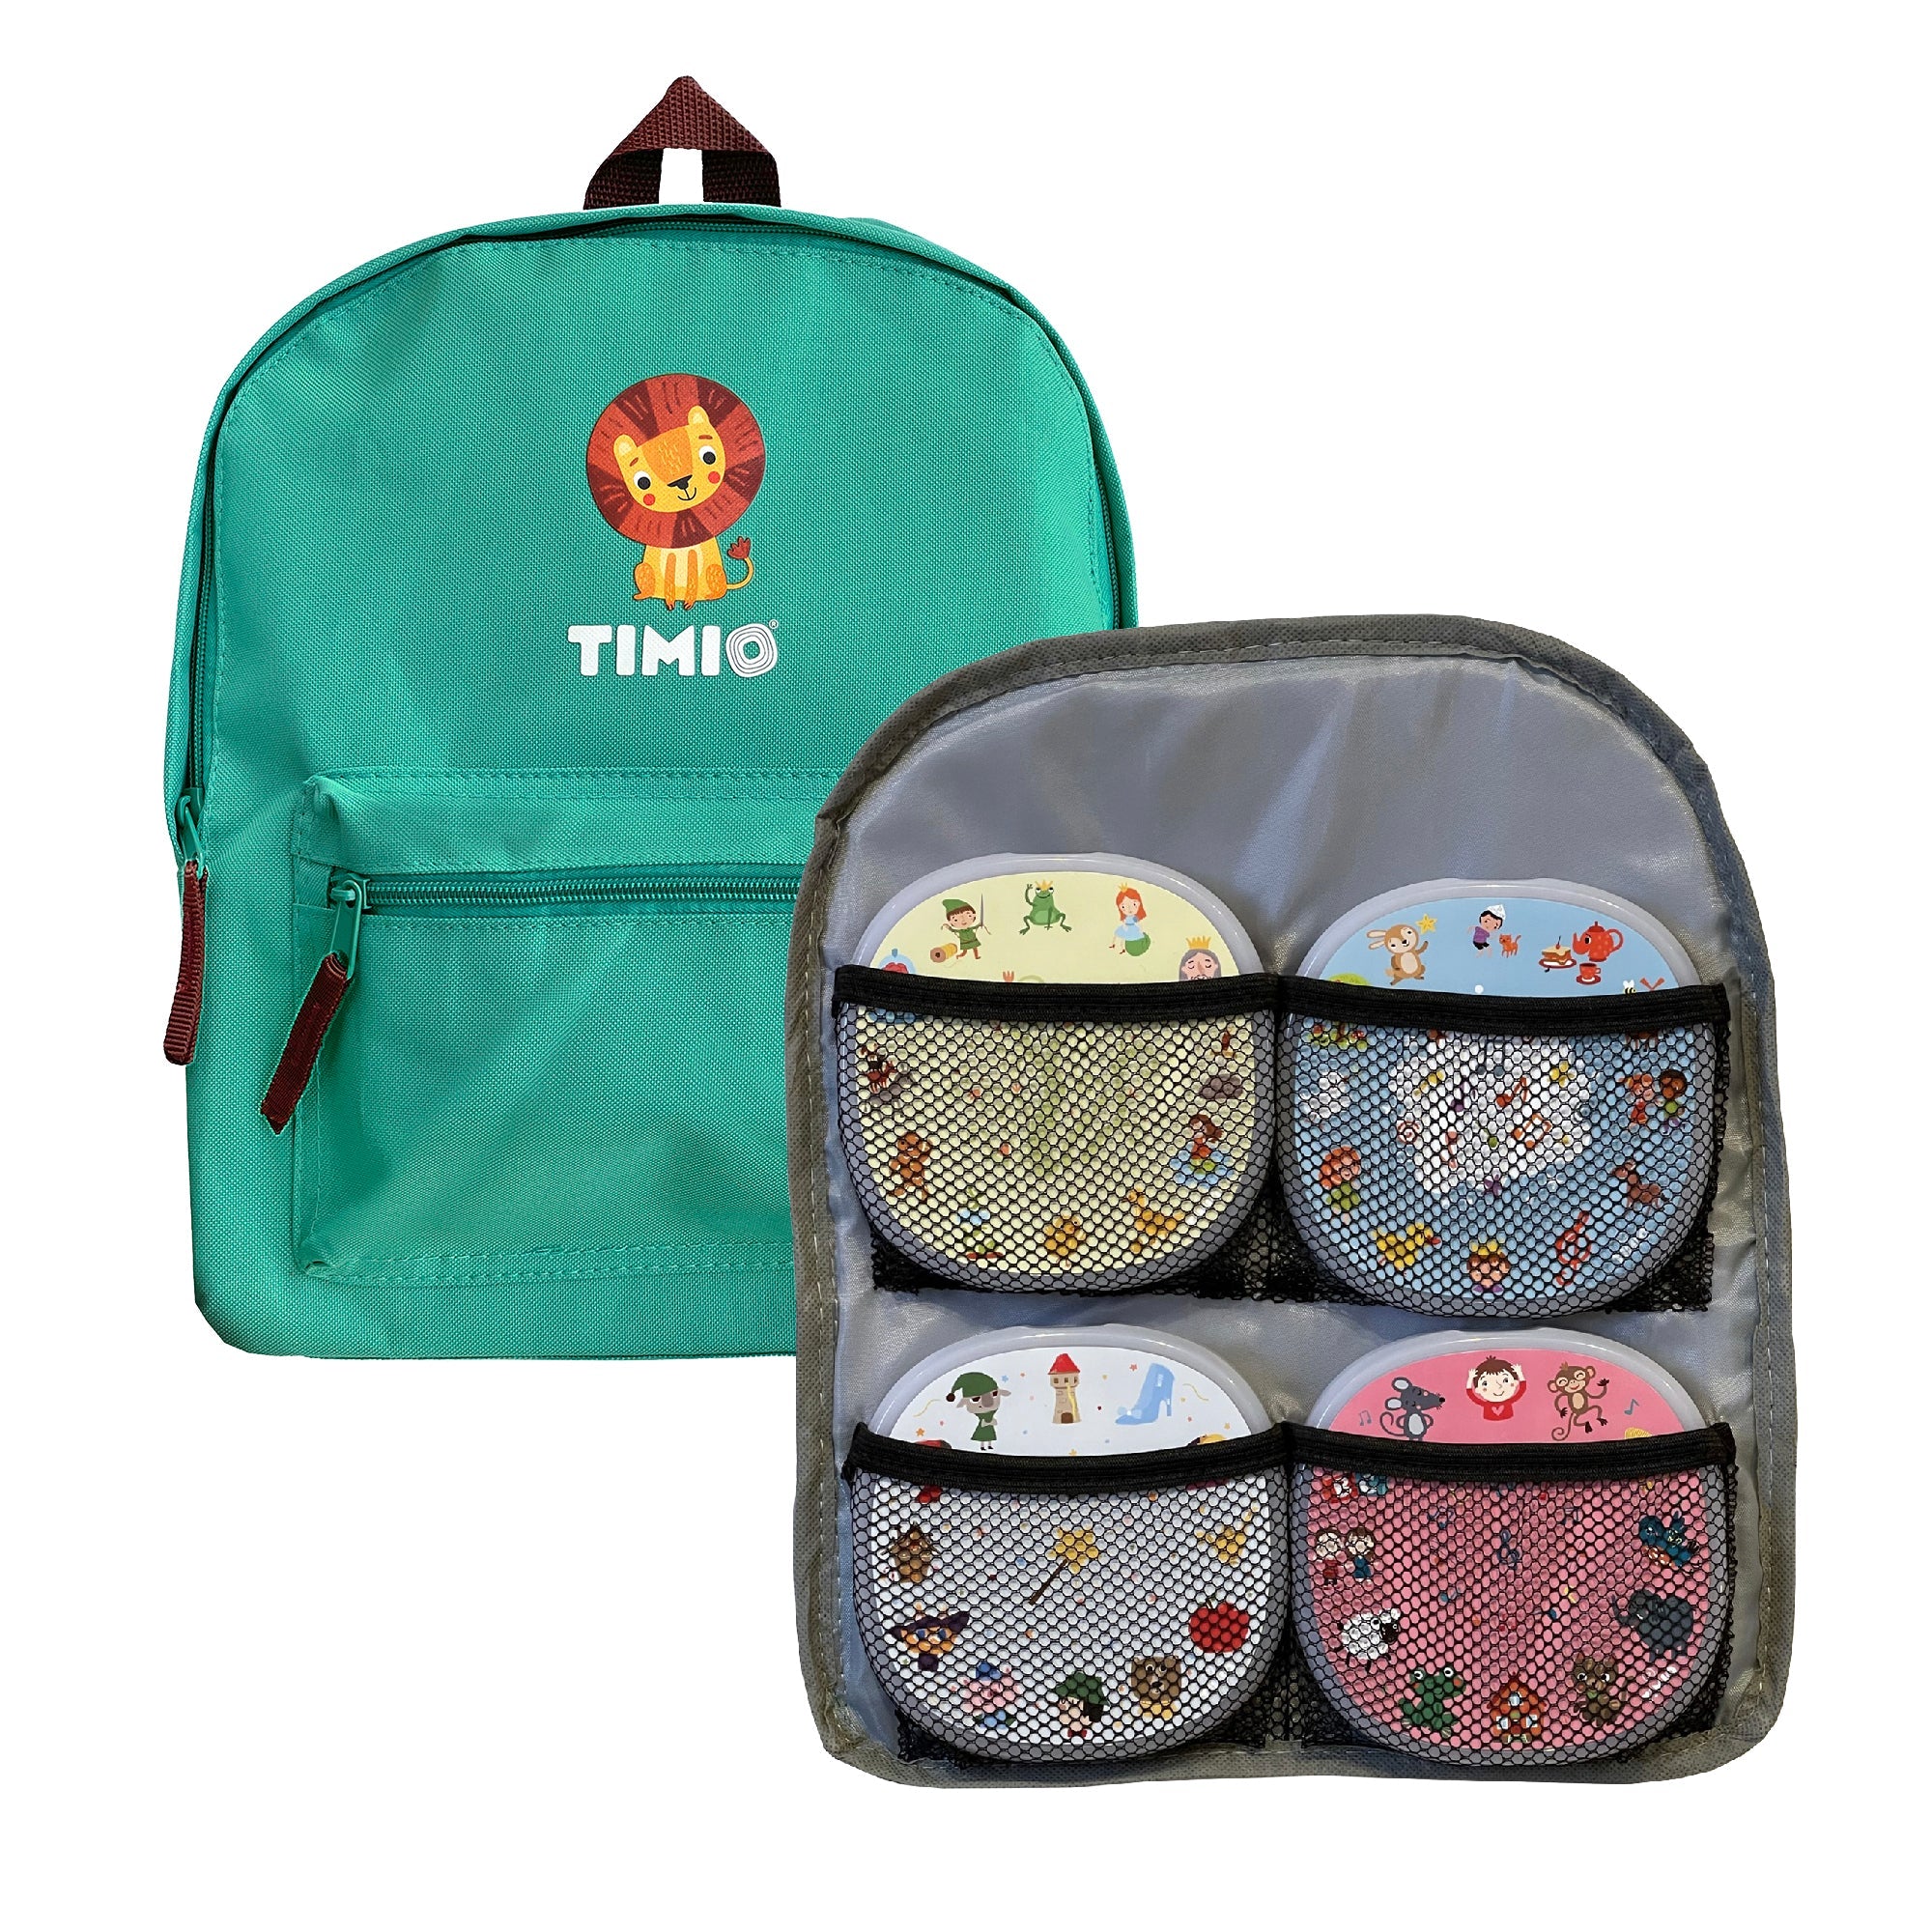 Timio: la mochila de la mochila de Timio para jugadores y discos